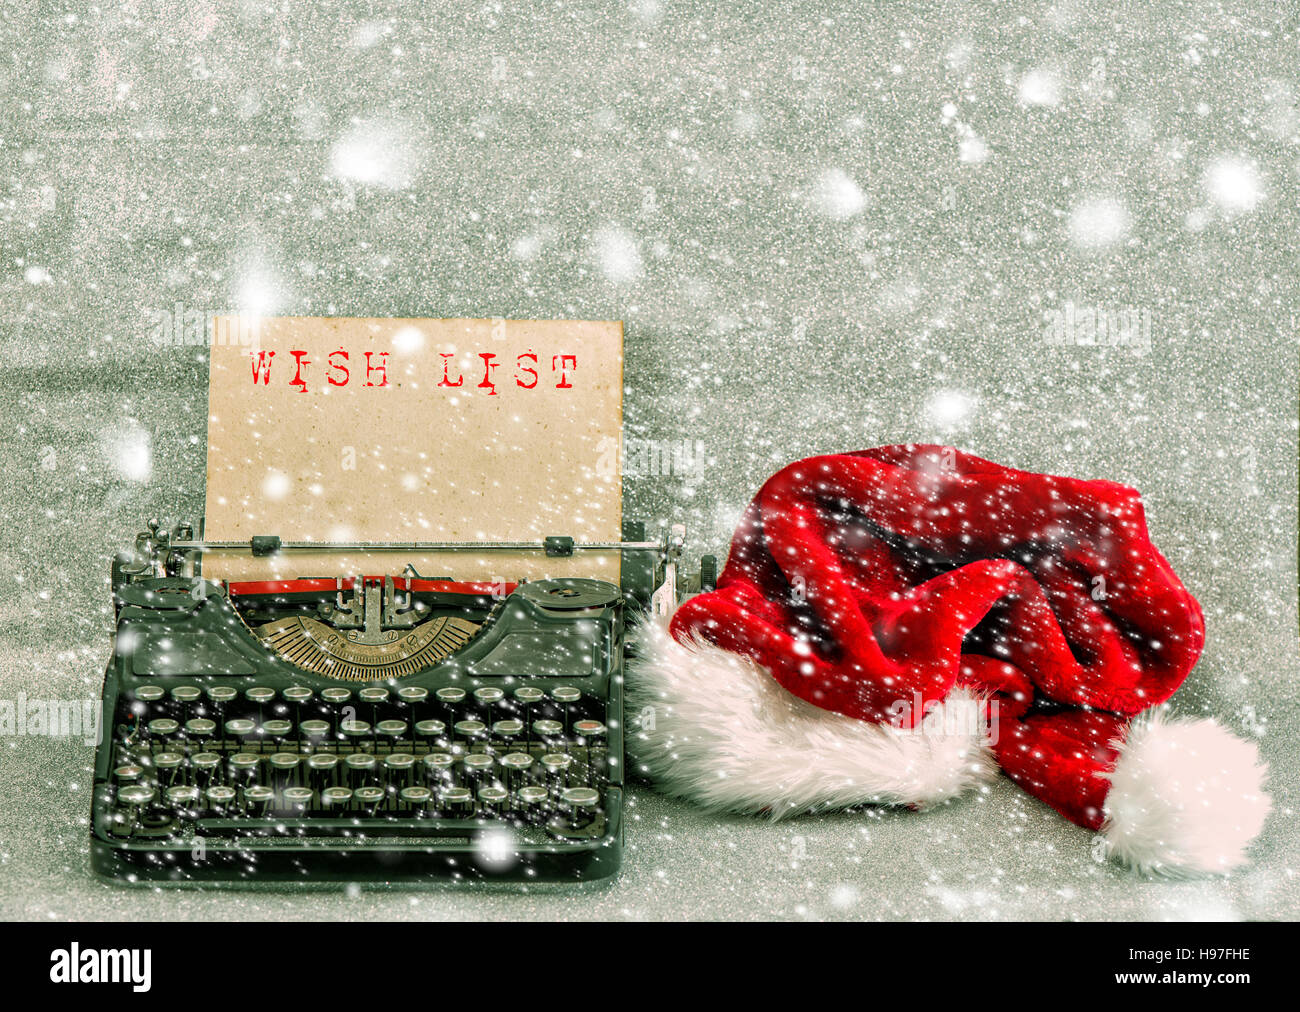 Vieille machine à écrire avec Red Hat et l'exemple de texte Liste de souhaits. Style Retro photo avec effet de chute de neige Banque D'Images